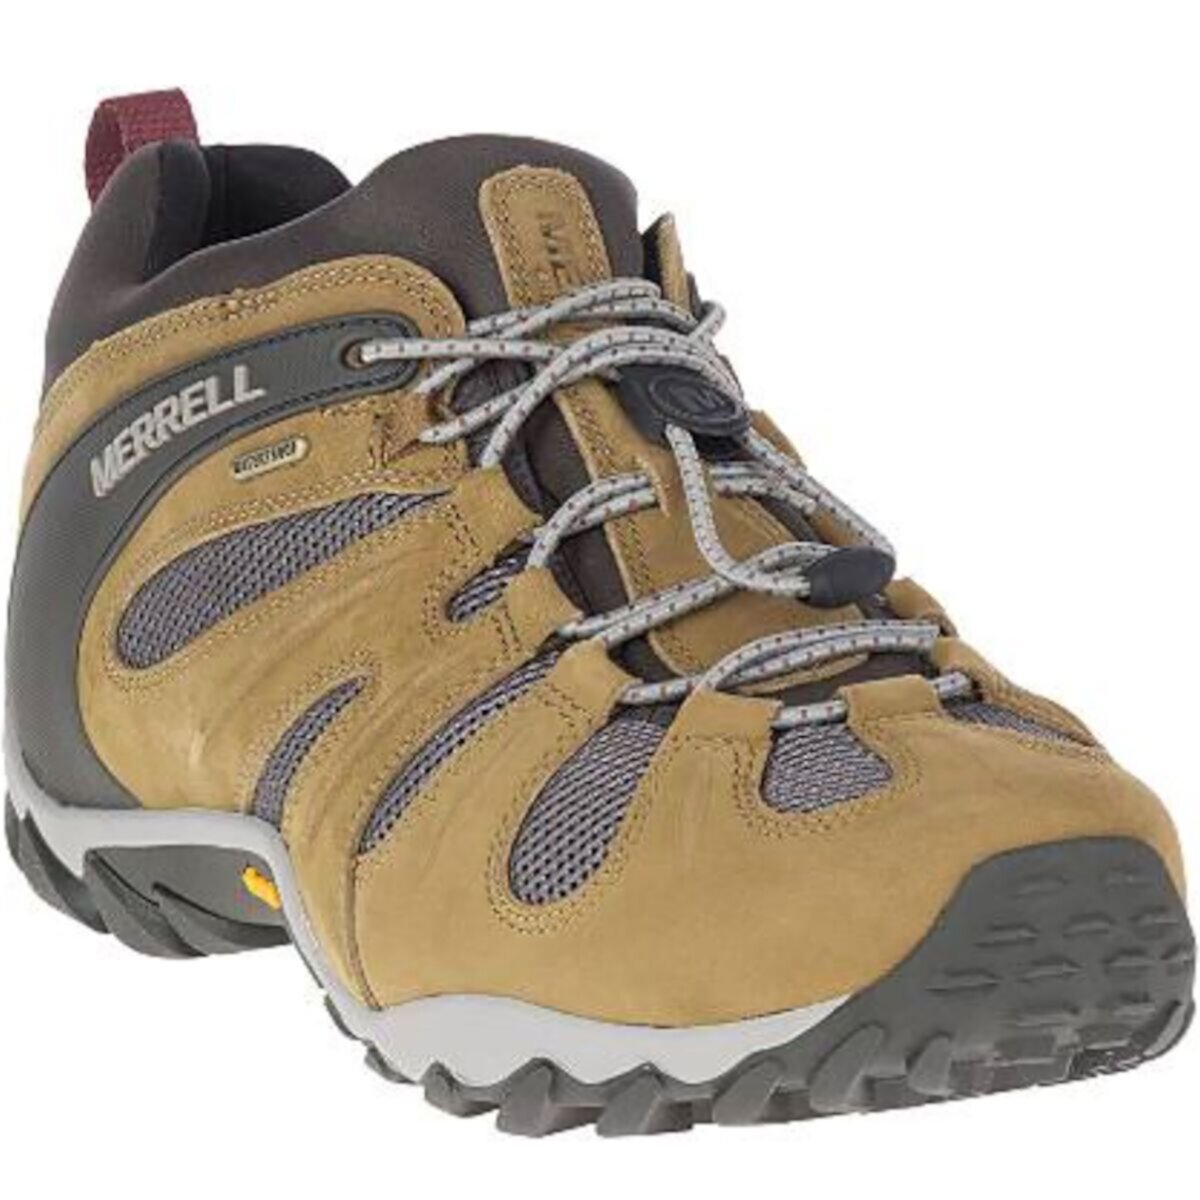 Туристические ботинки Chameleon 8 Stretch Waterproof от Merrell для мужчин Merrell